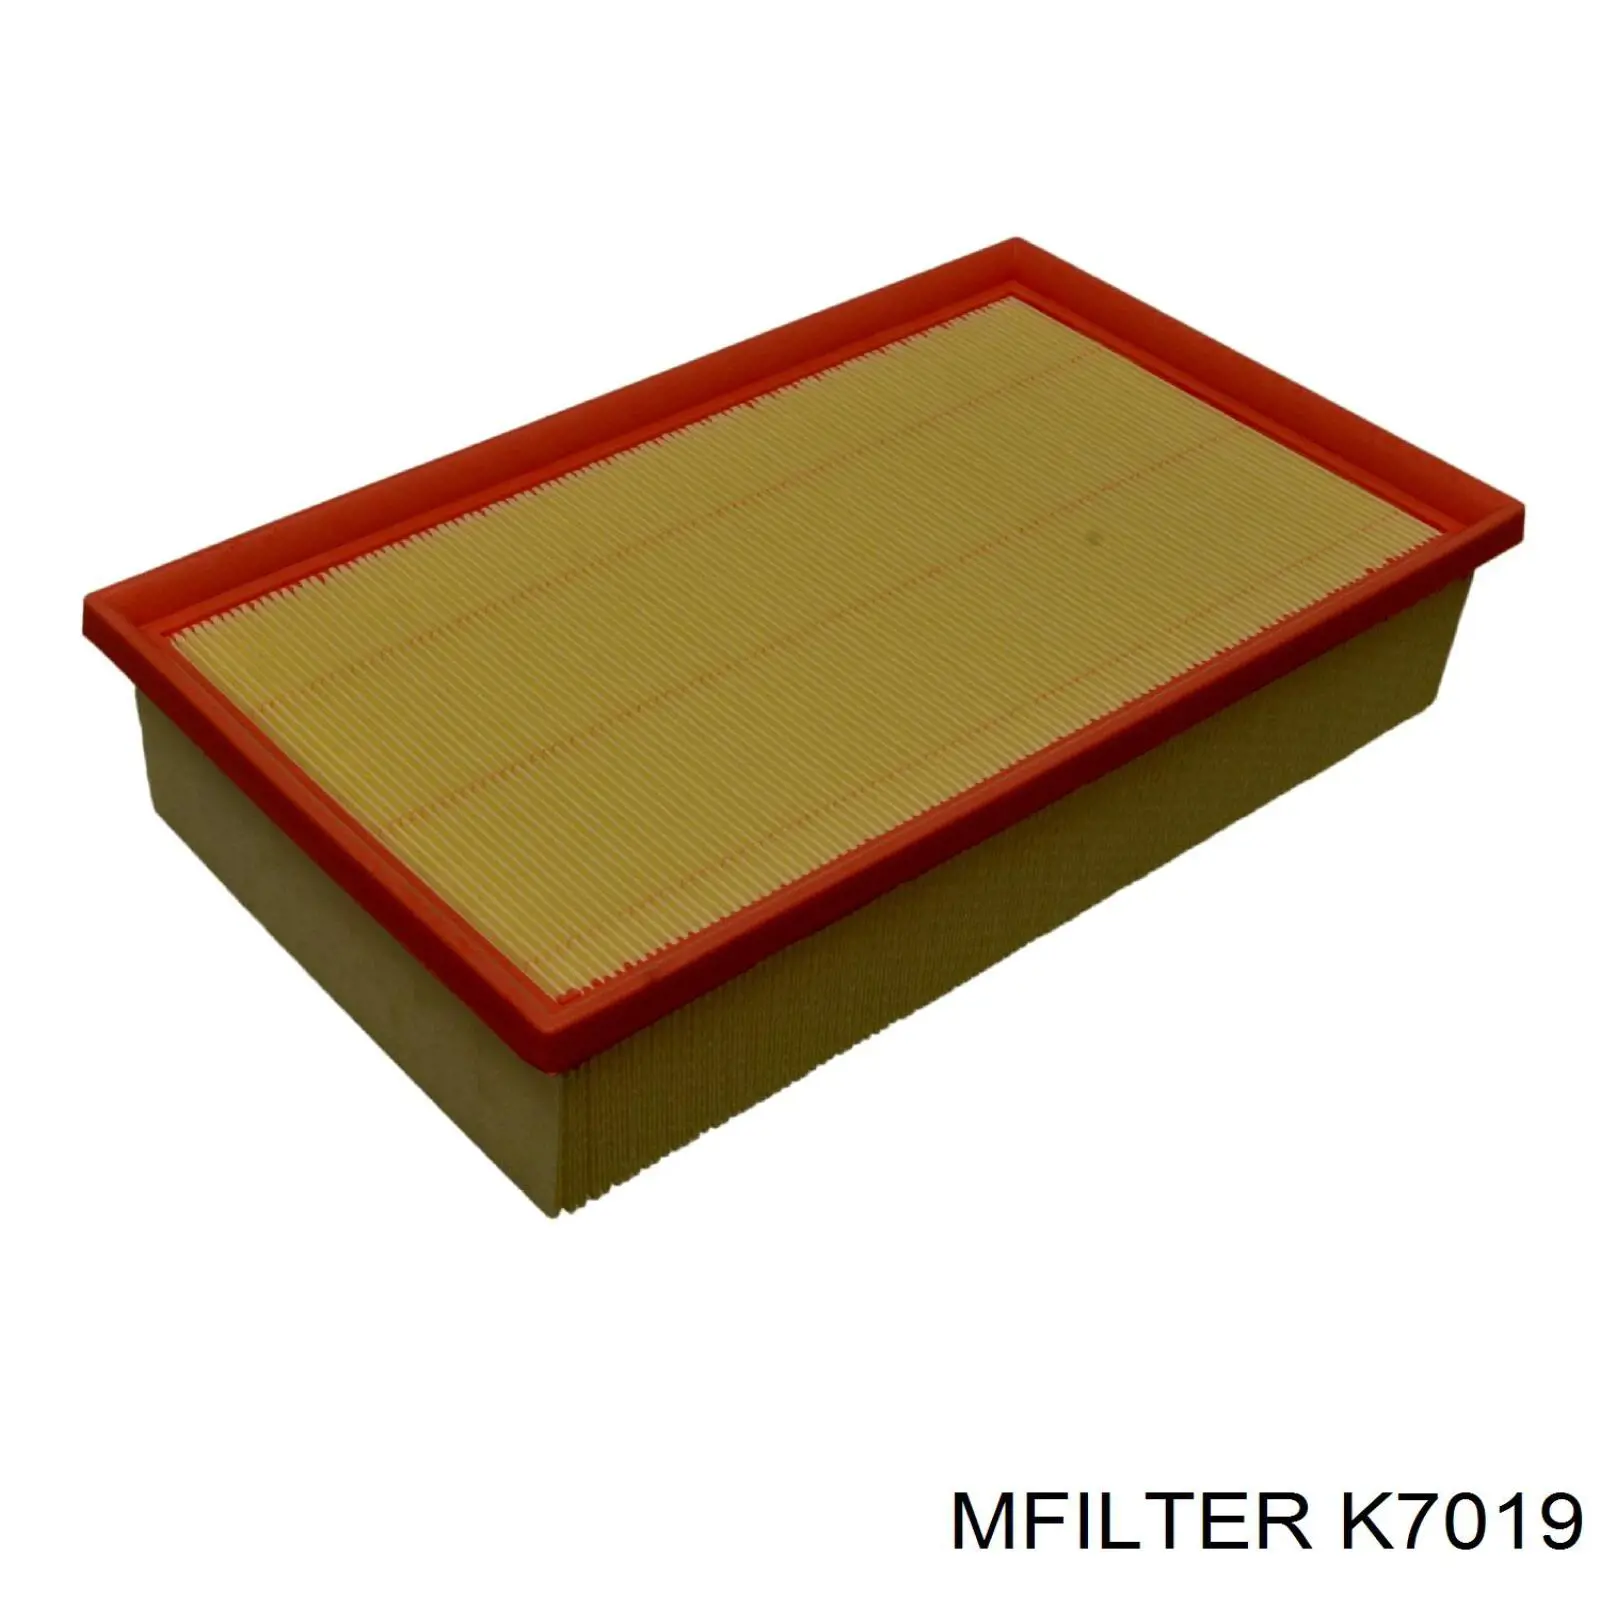 K7019 Mfilter воздушный фильтр